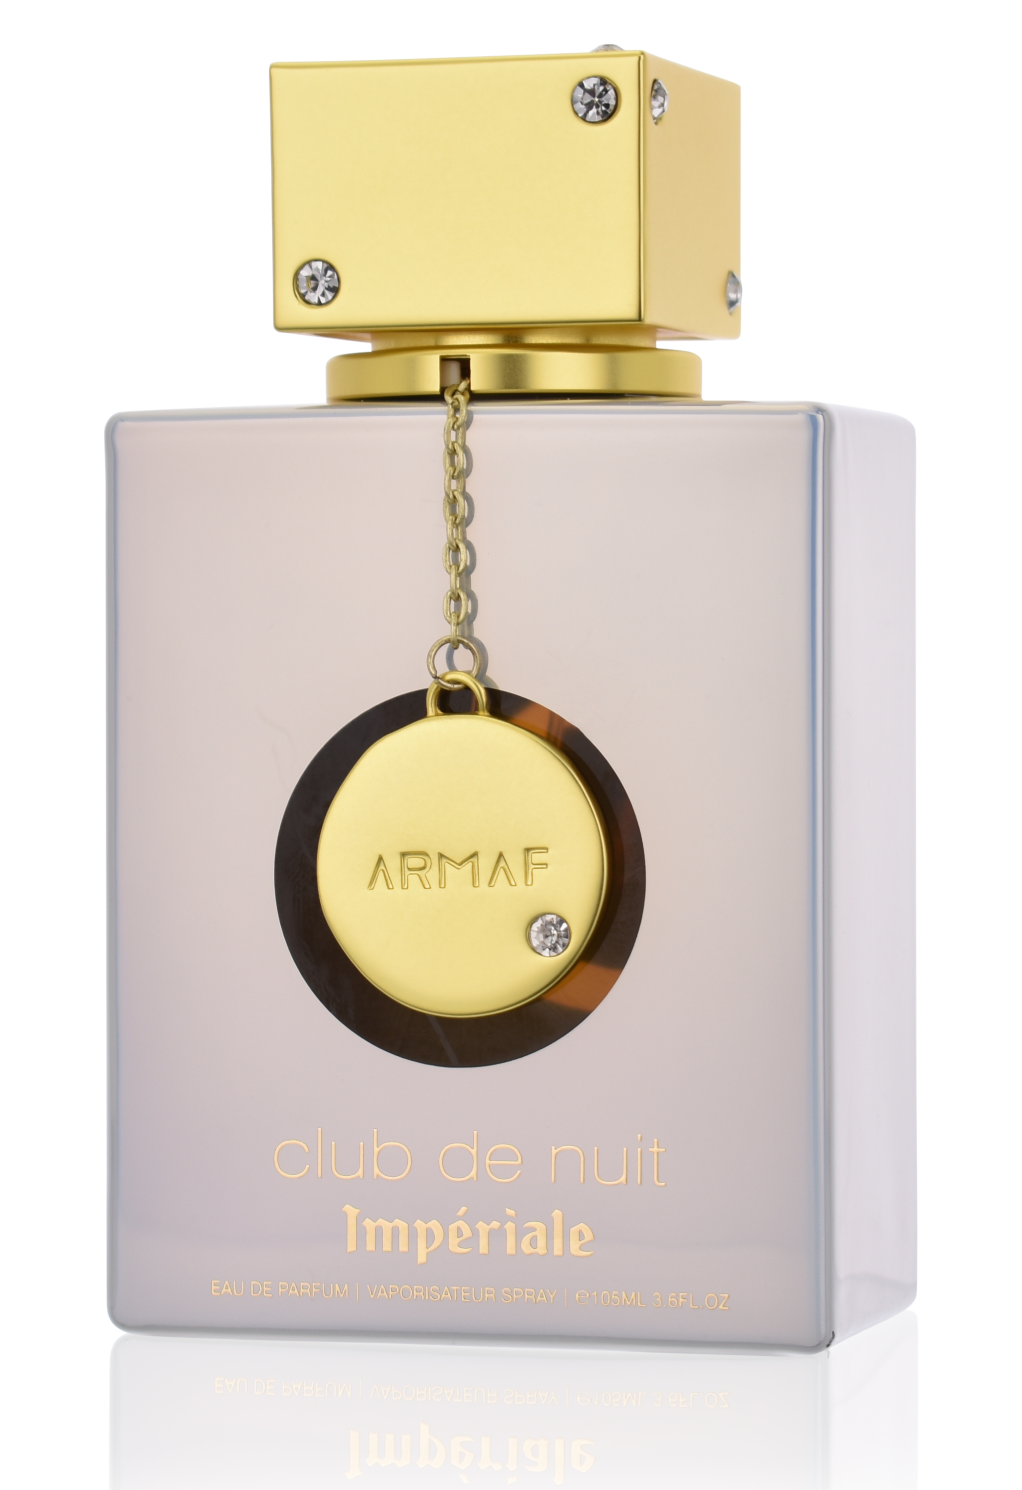 Armaf Club de Nuit Imperiale 105 ml Eau de Parfum   